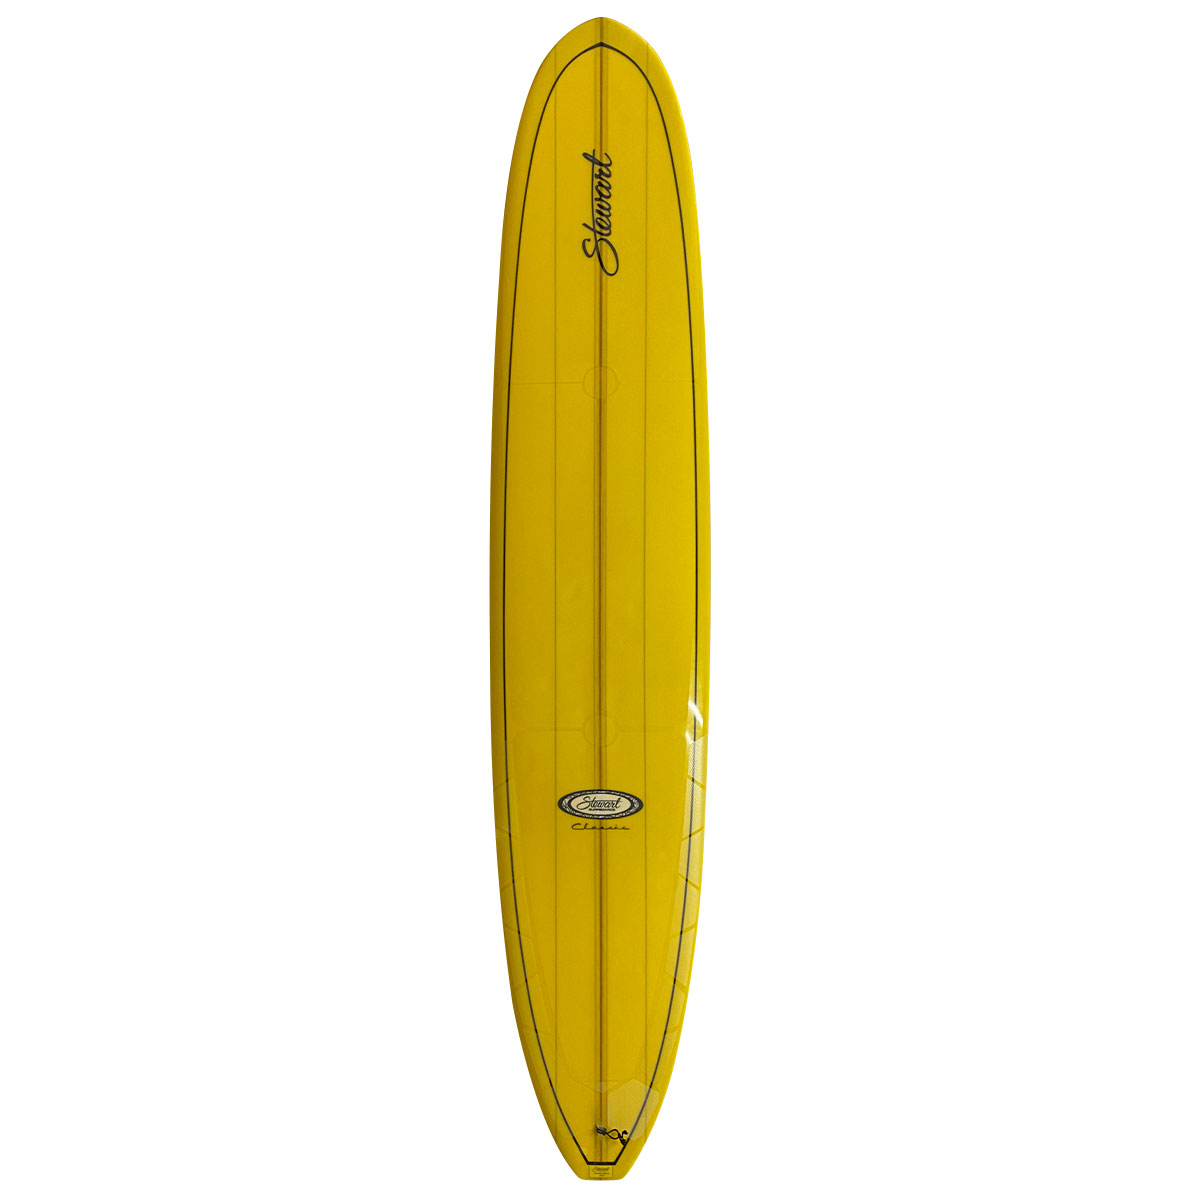 USED SURF×SURF MARKET